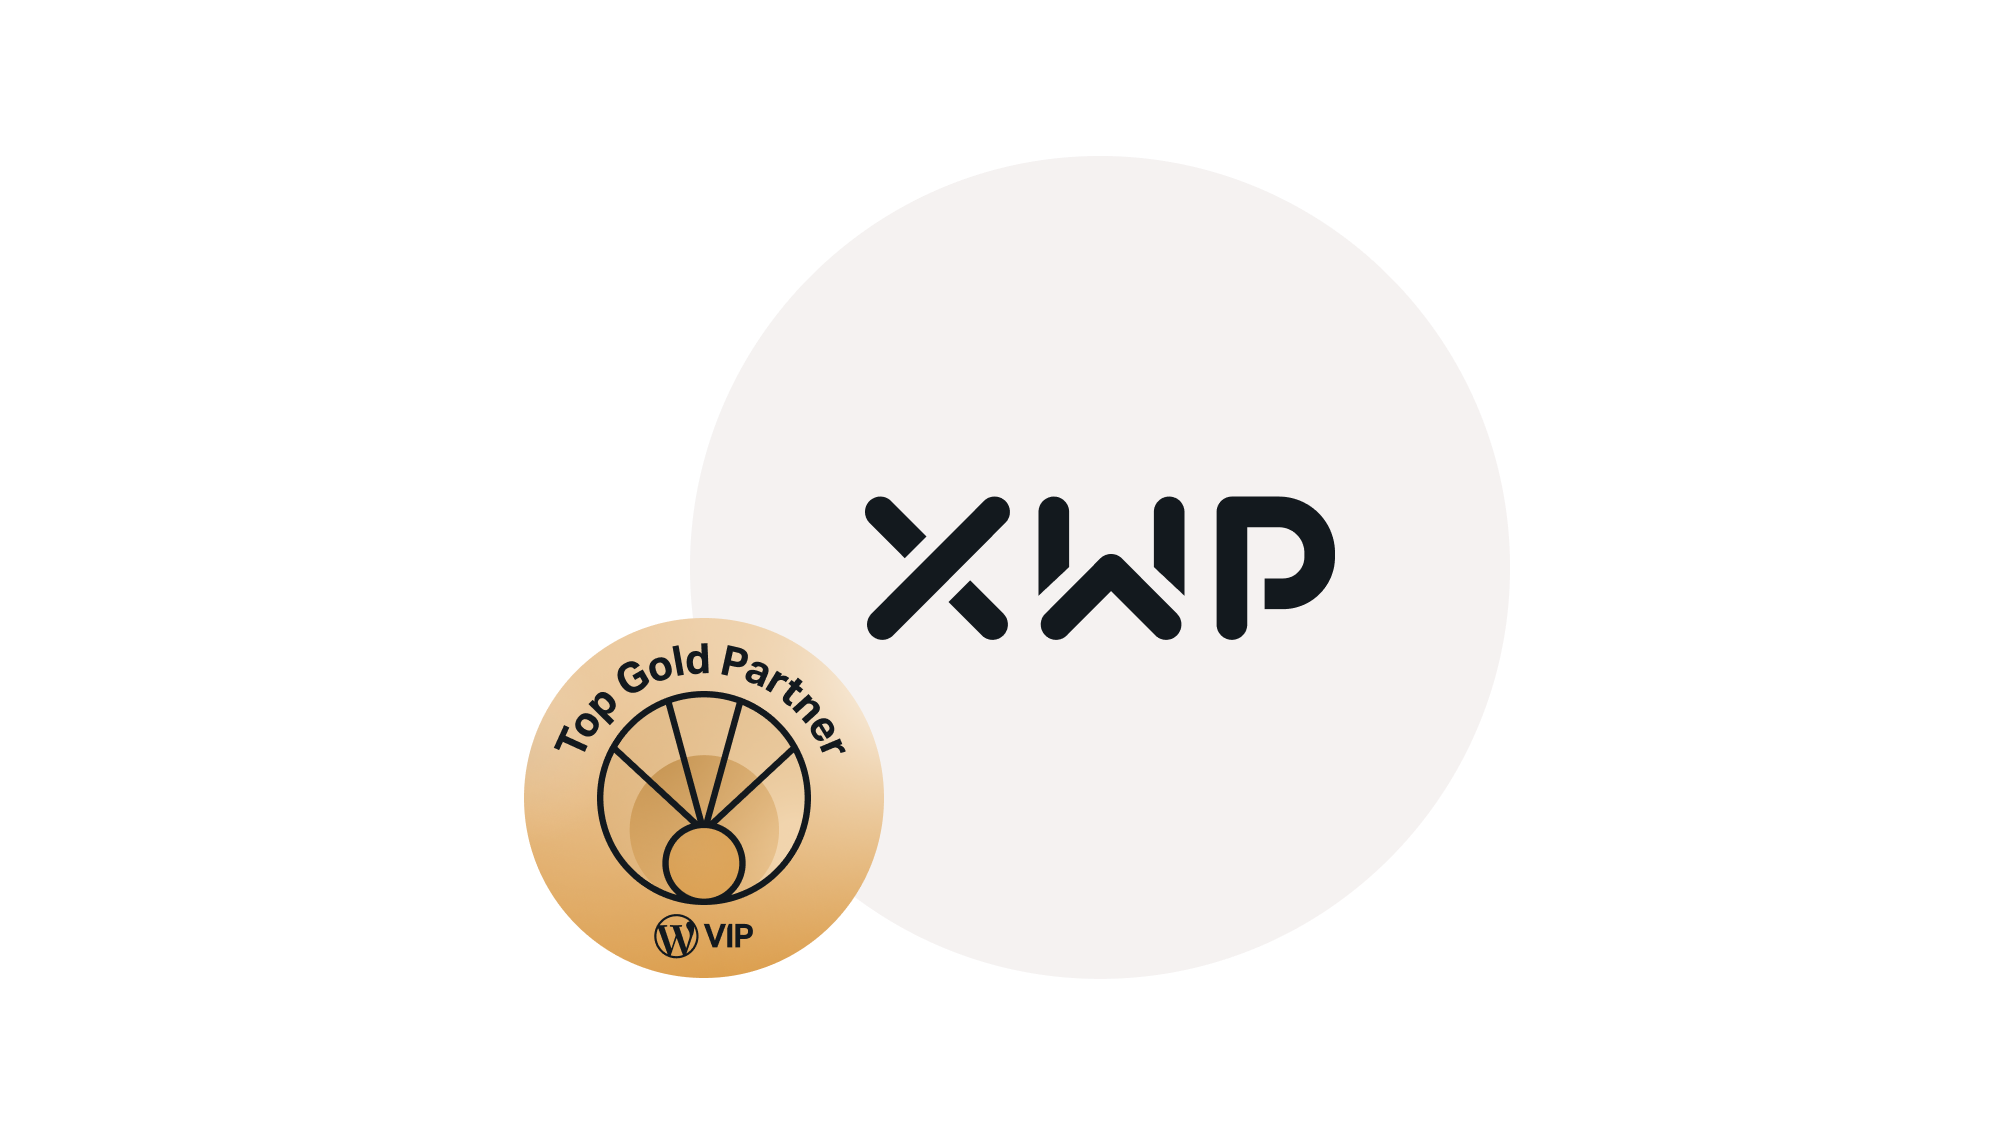 Top Gold Partner award winner for XWP